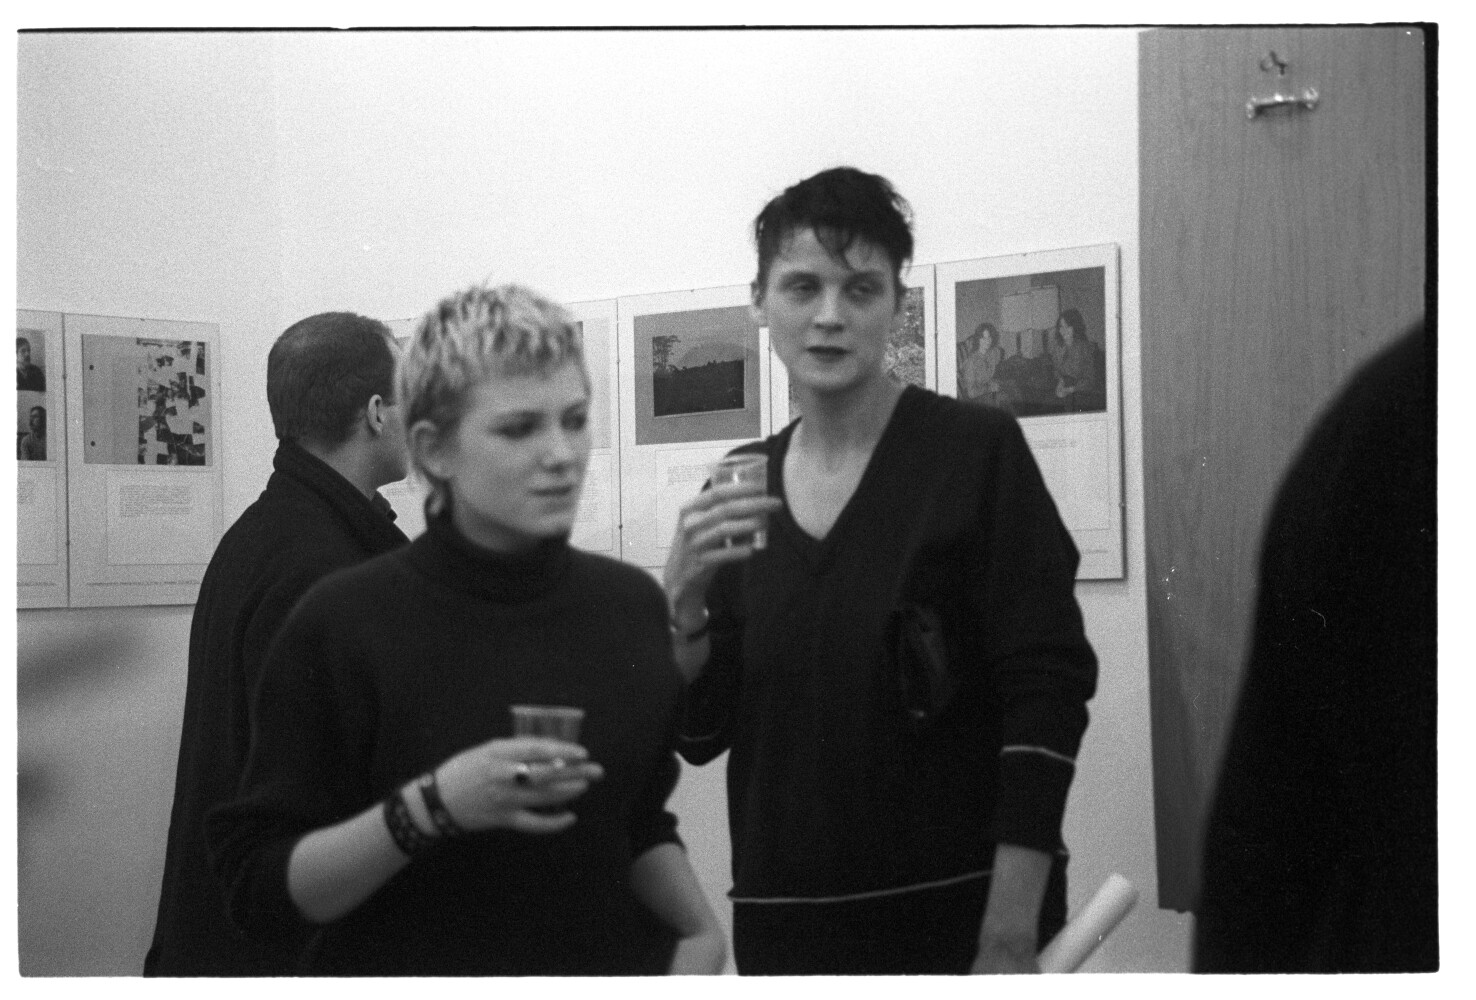 Die Tödliche Doris 06.03.1986 I N 3 (Rita Maier / Schwules Museum Berlin RR-P)